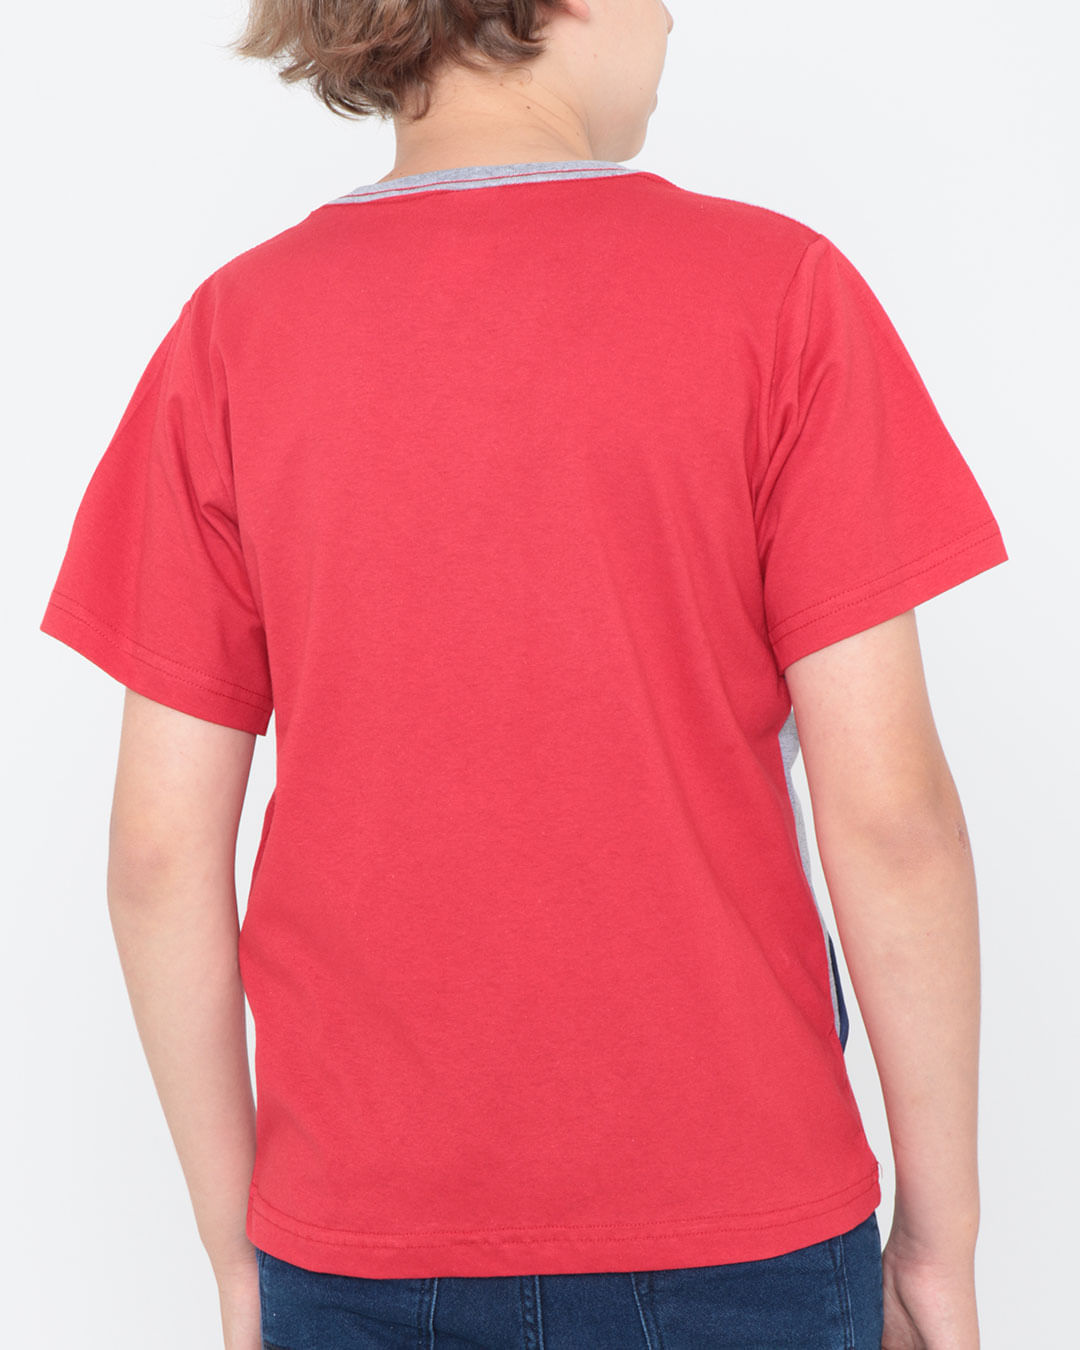 Camiseta-Juvenil-Recorte-Vermelha